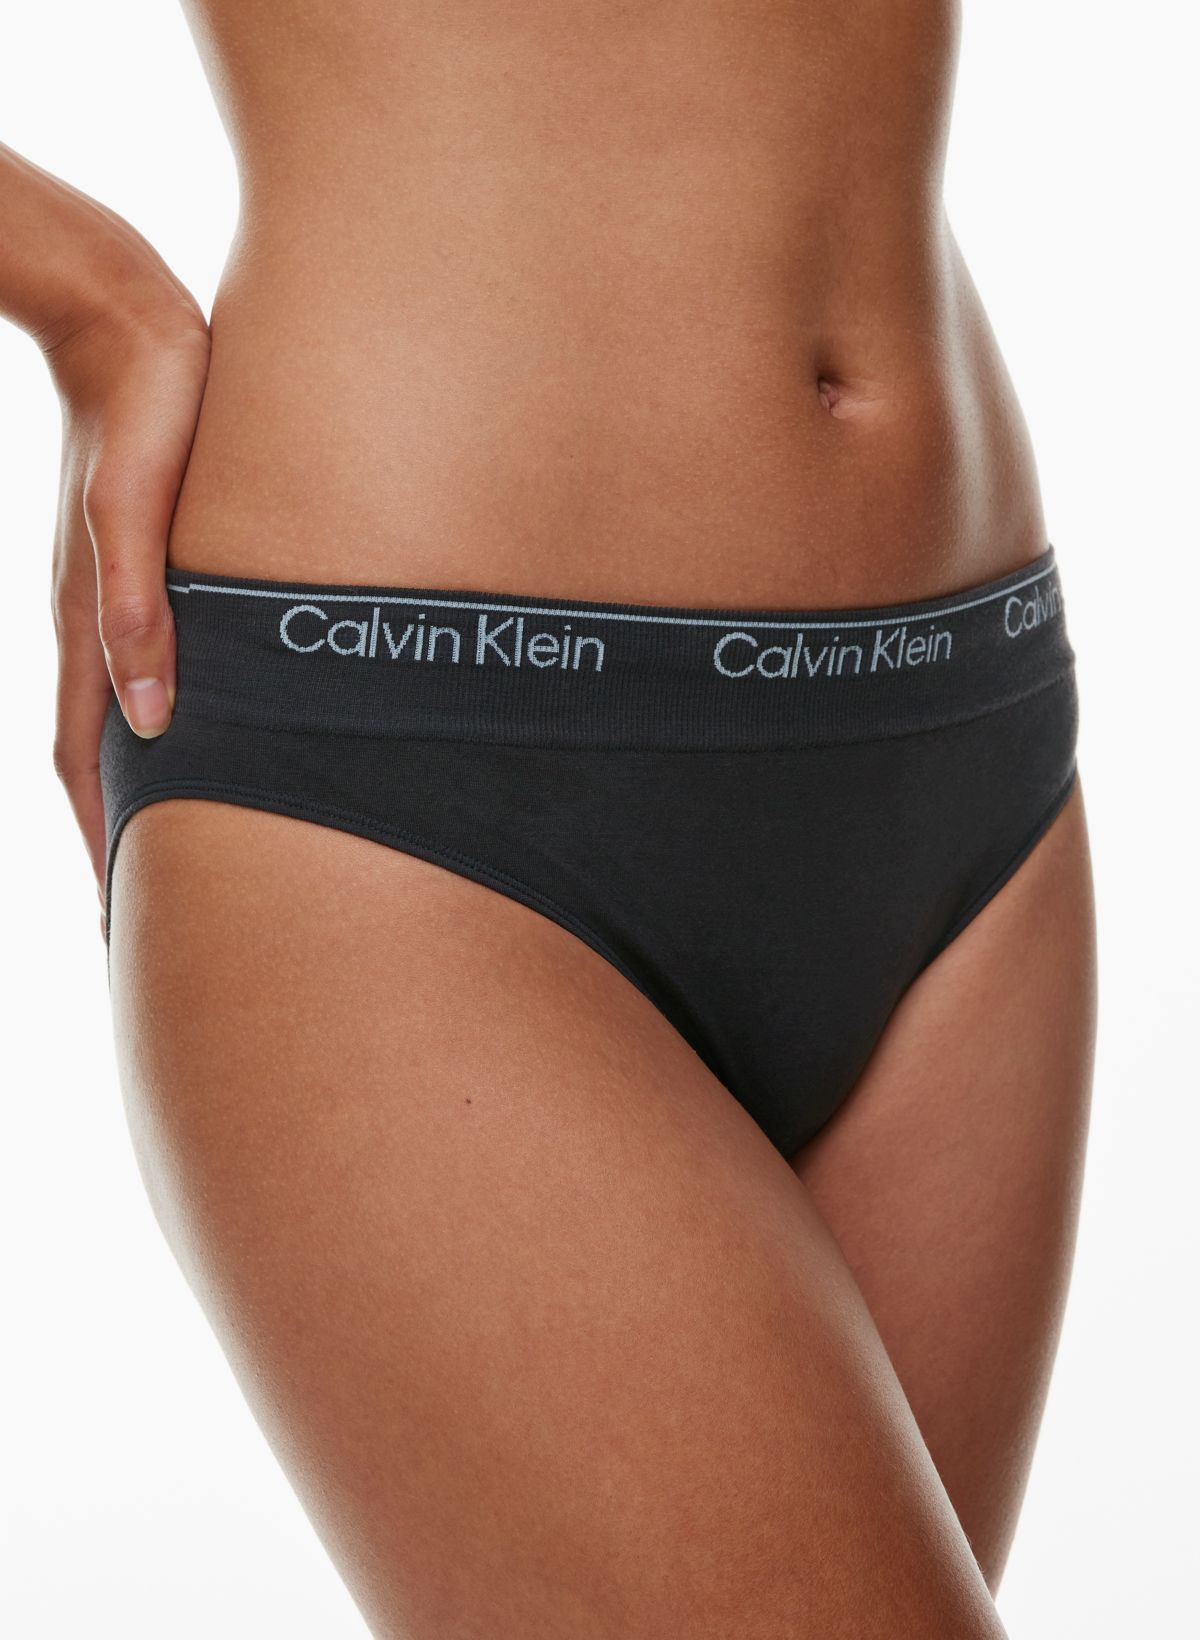 Modern Cotton Bikini Briefs by Calvin Klein Online